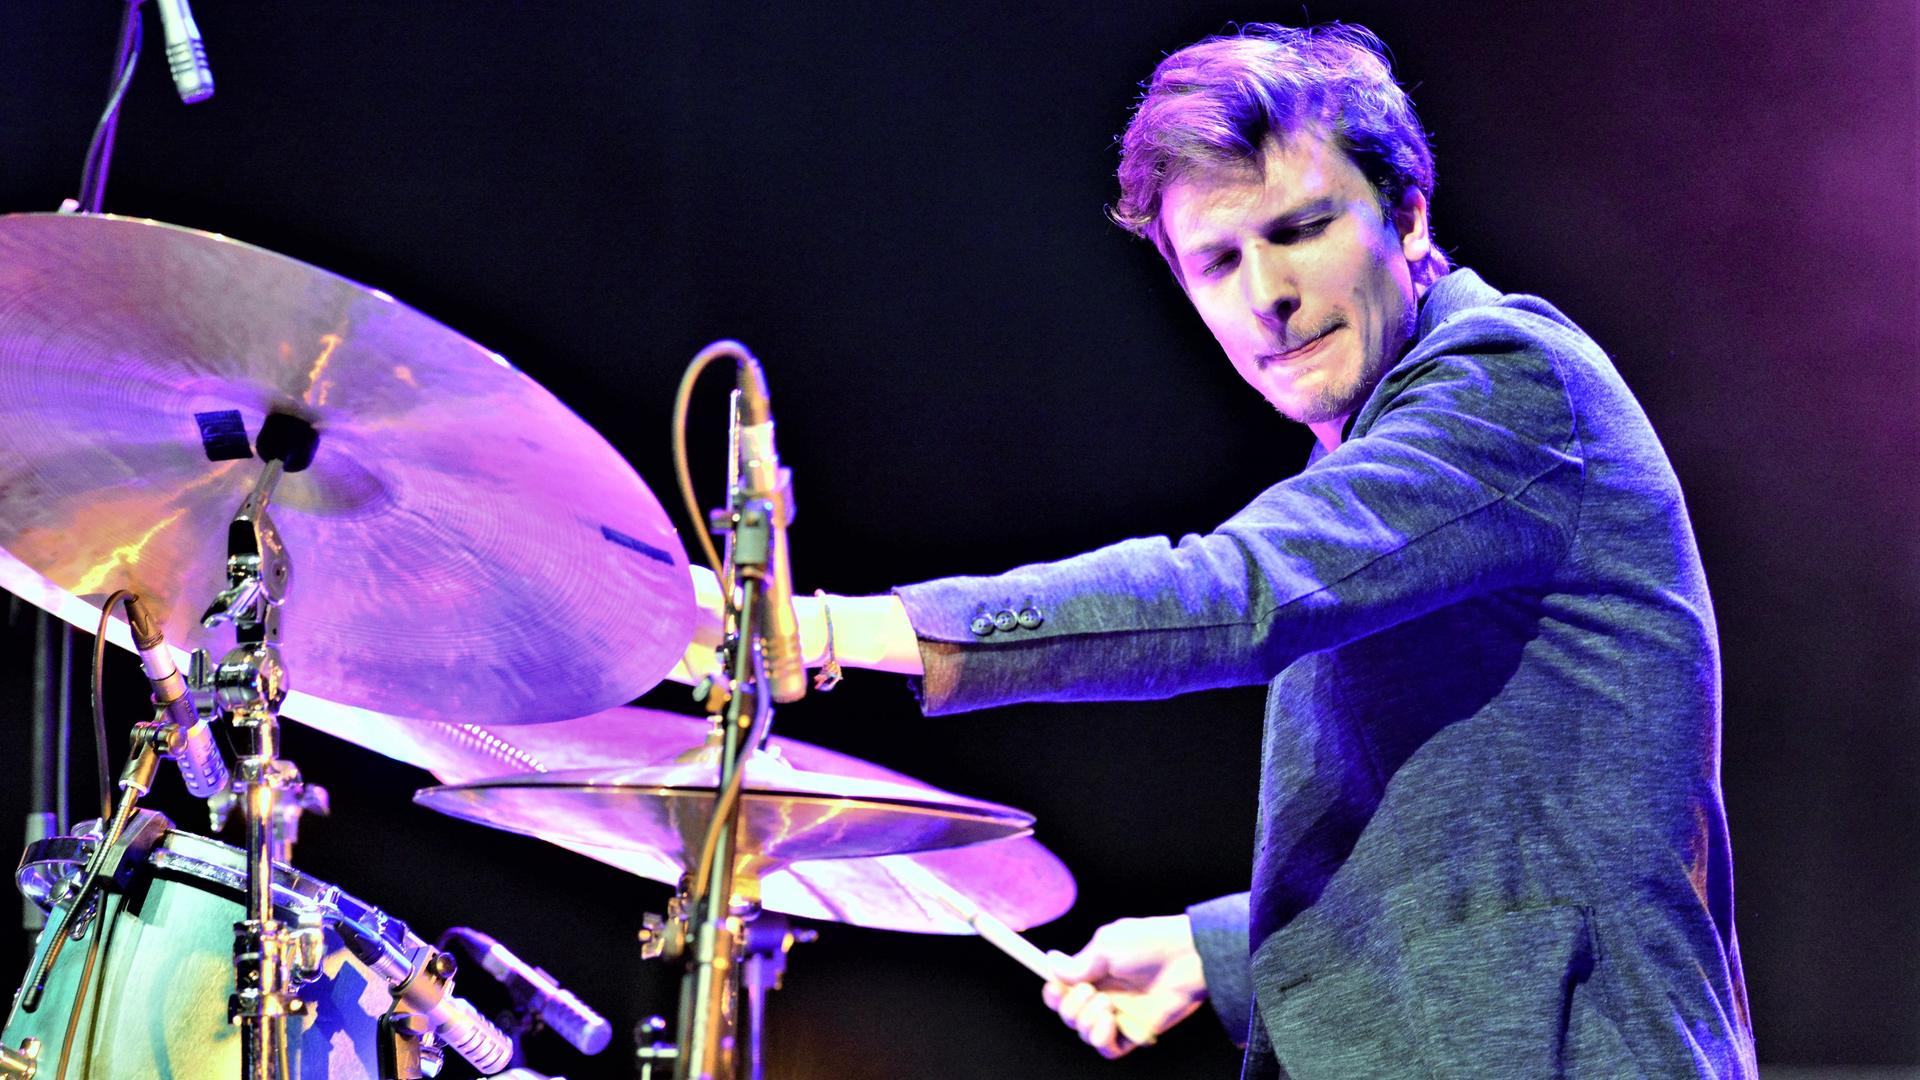 Ein Schlagzeuger spielt auf seinem Instrument und schaut mit geschlossenen Augen konzentriert zur Seite.